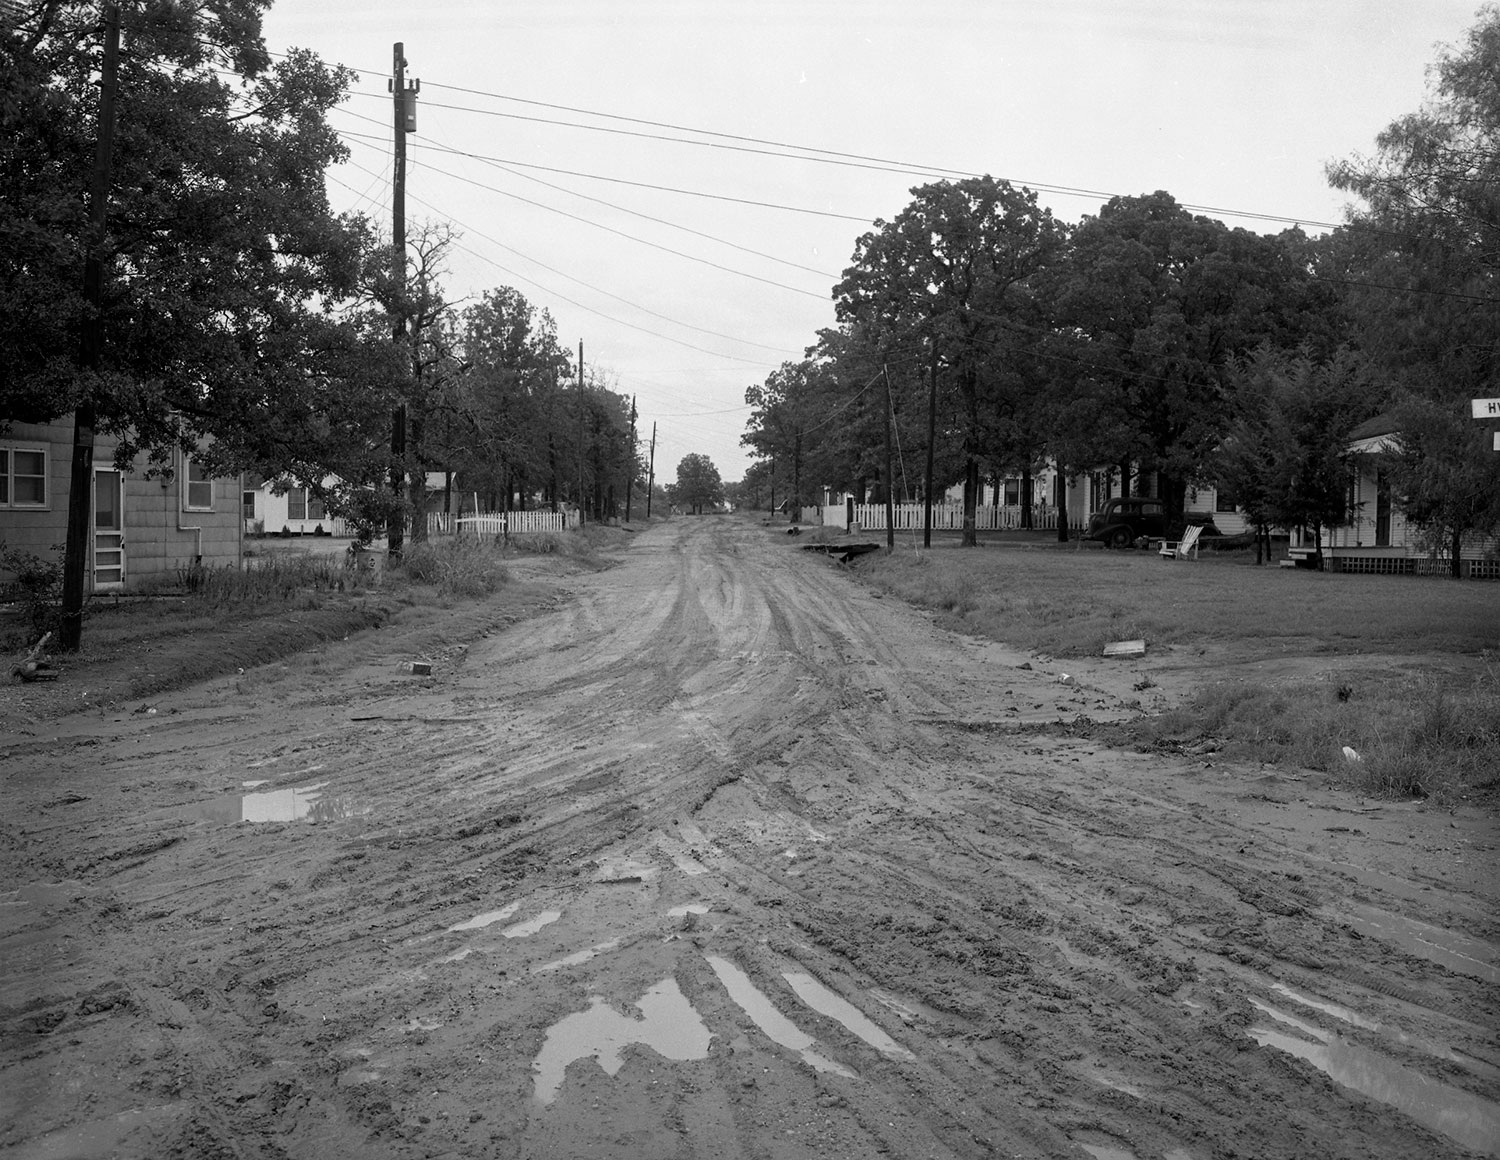 Dirt road in Bryan circa 1940s or 1950s.